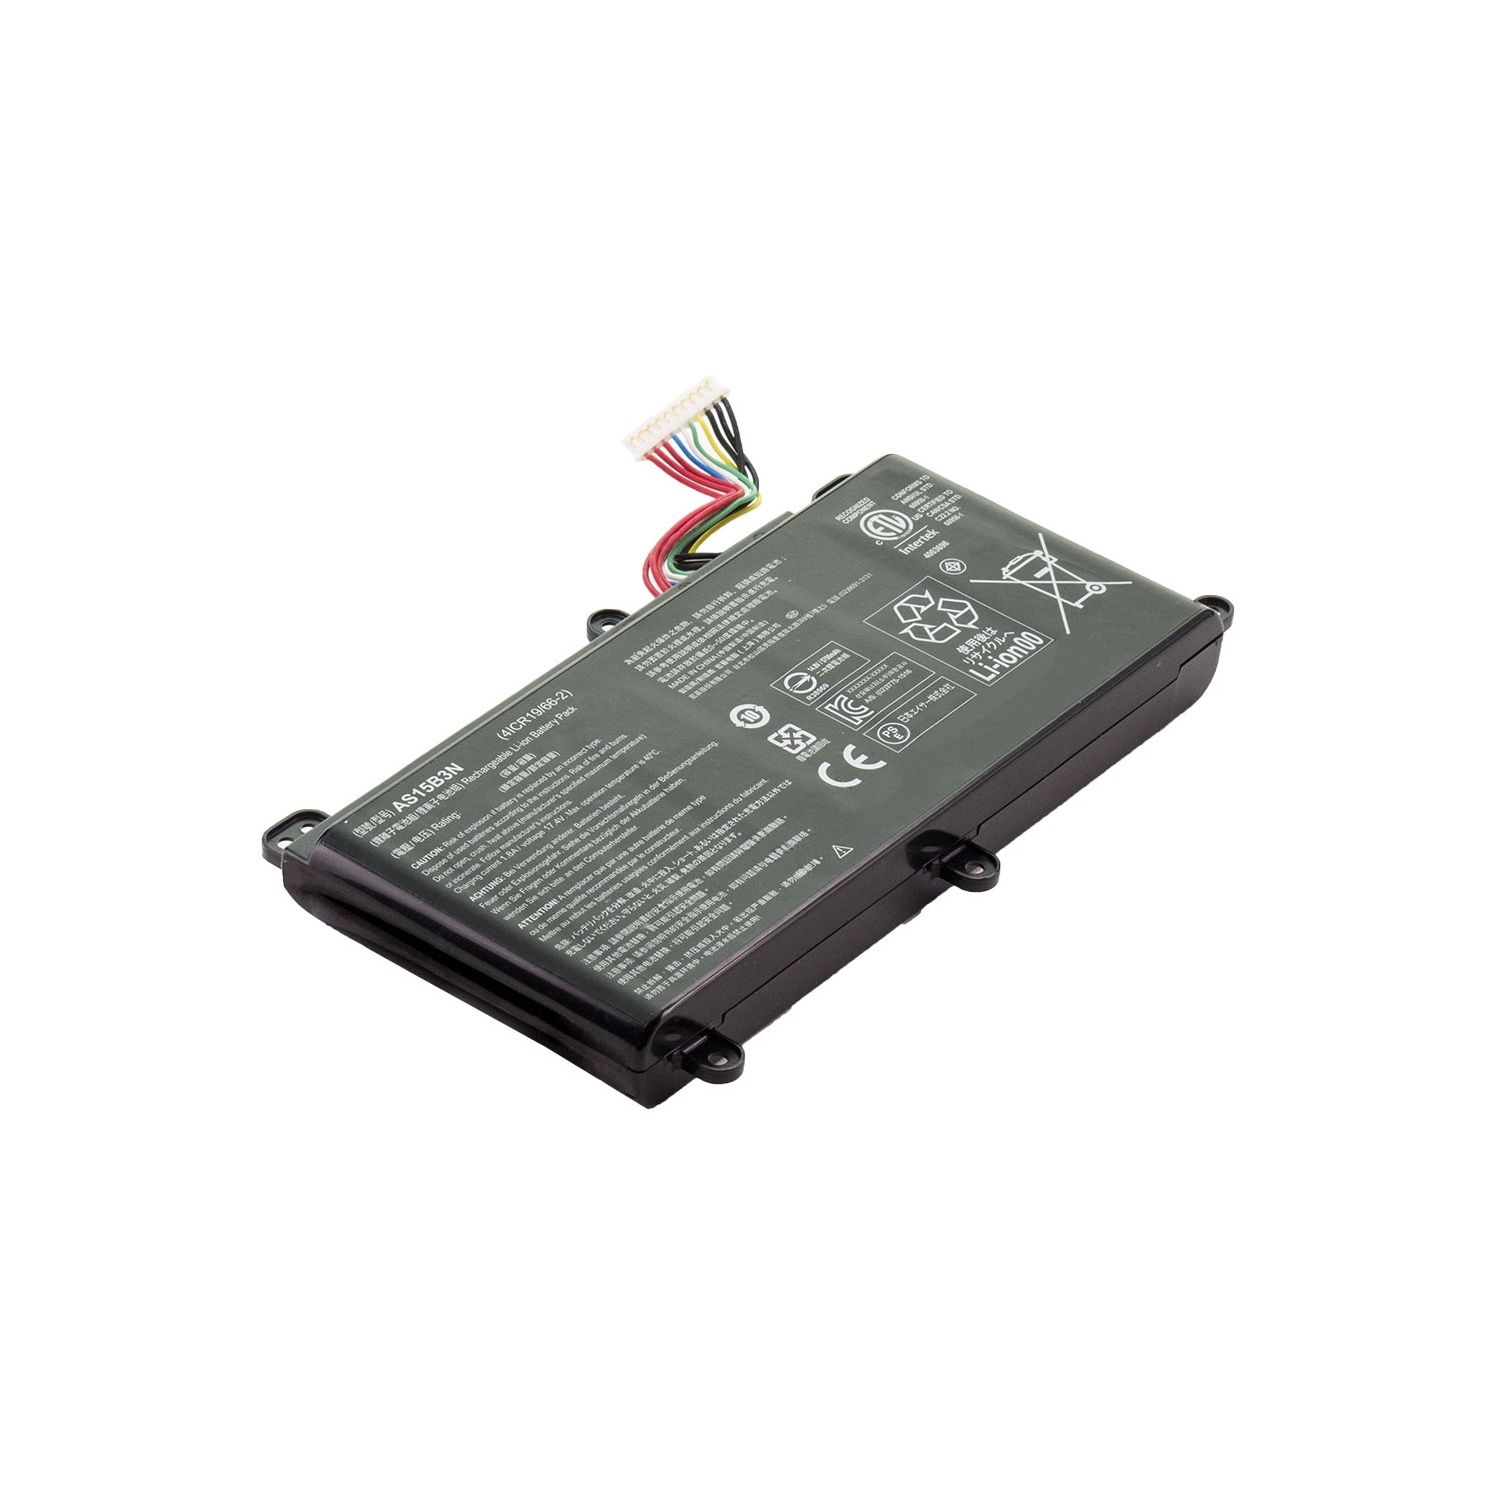 BATTDEPOT NEW Laptop Battery for Acer Predator 15 G9-592-70GD AS15B3N KT.00803.004 KT.00803.005